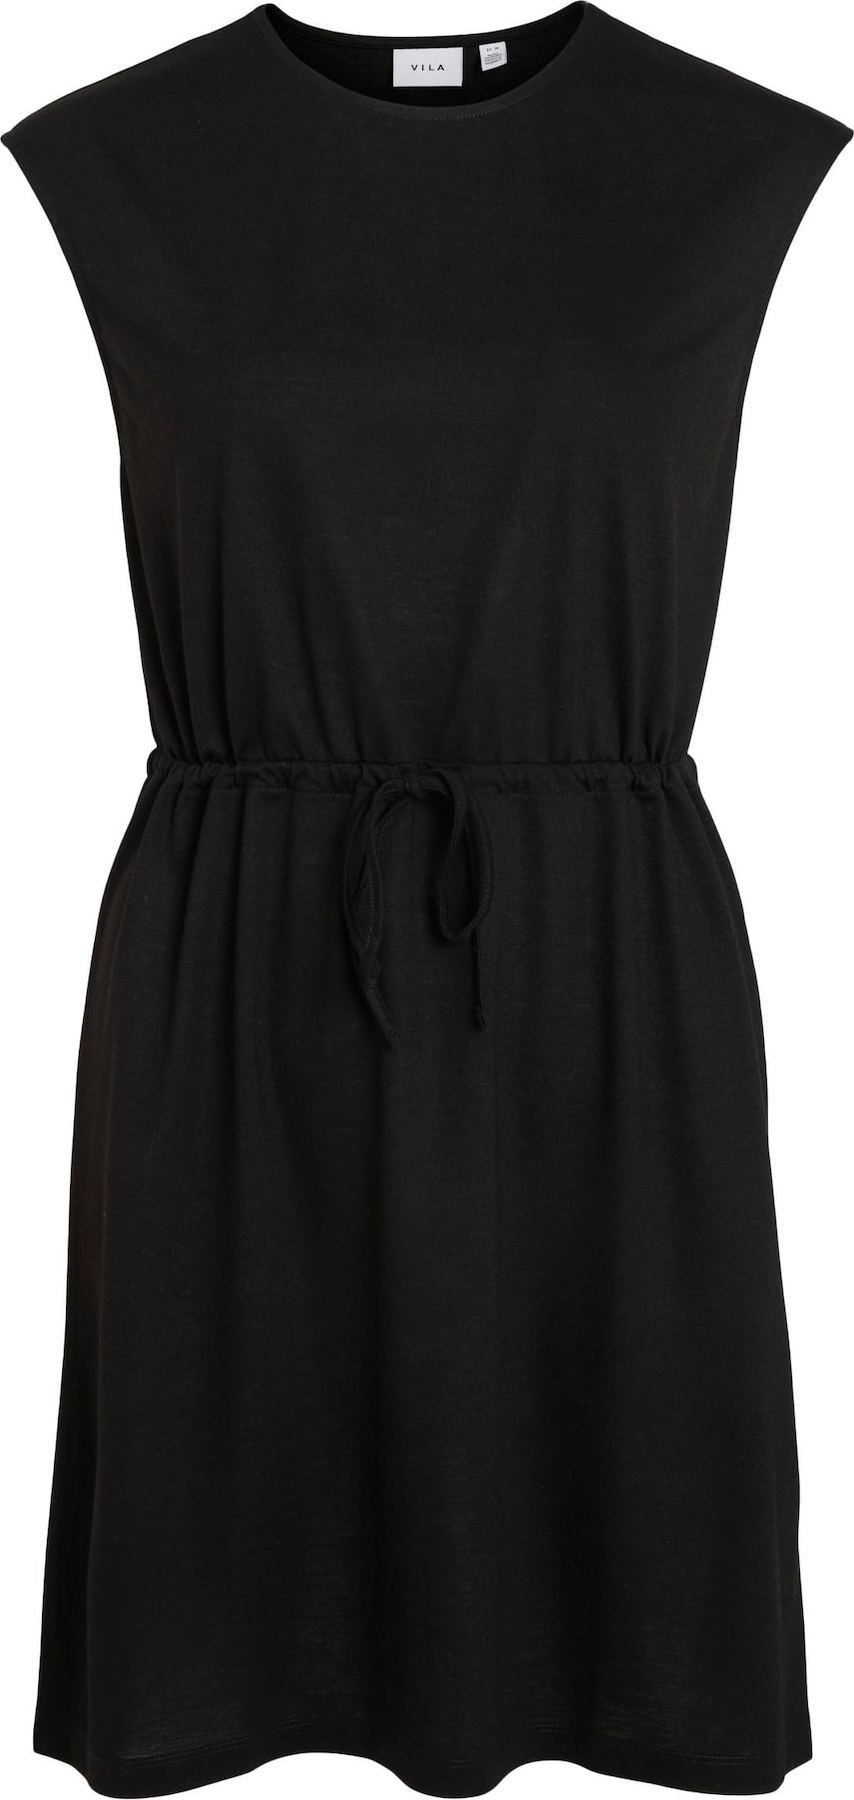 VILA Letní šaty 'Athena' černá